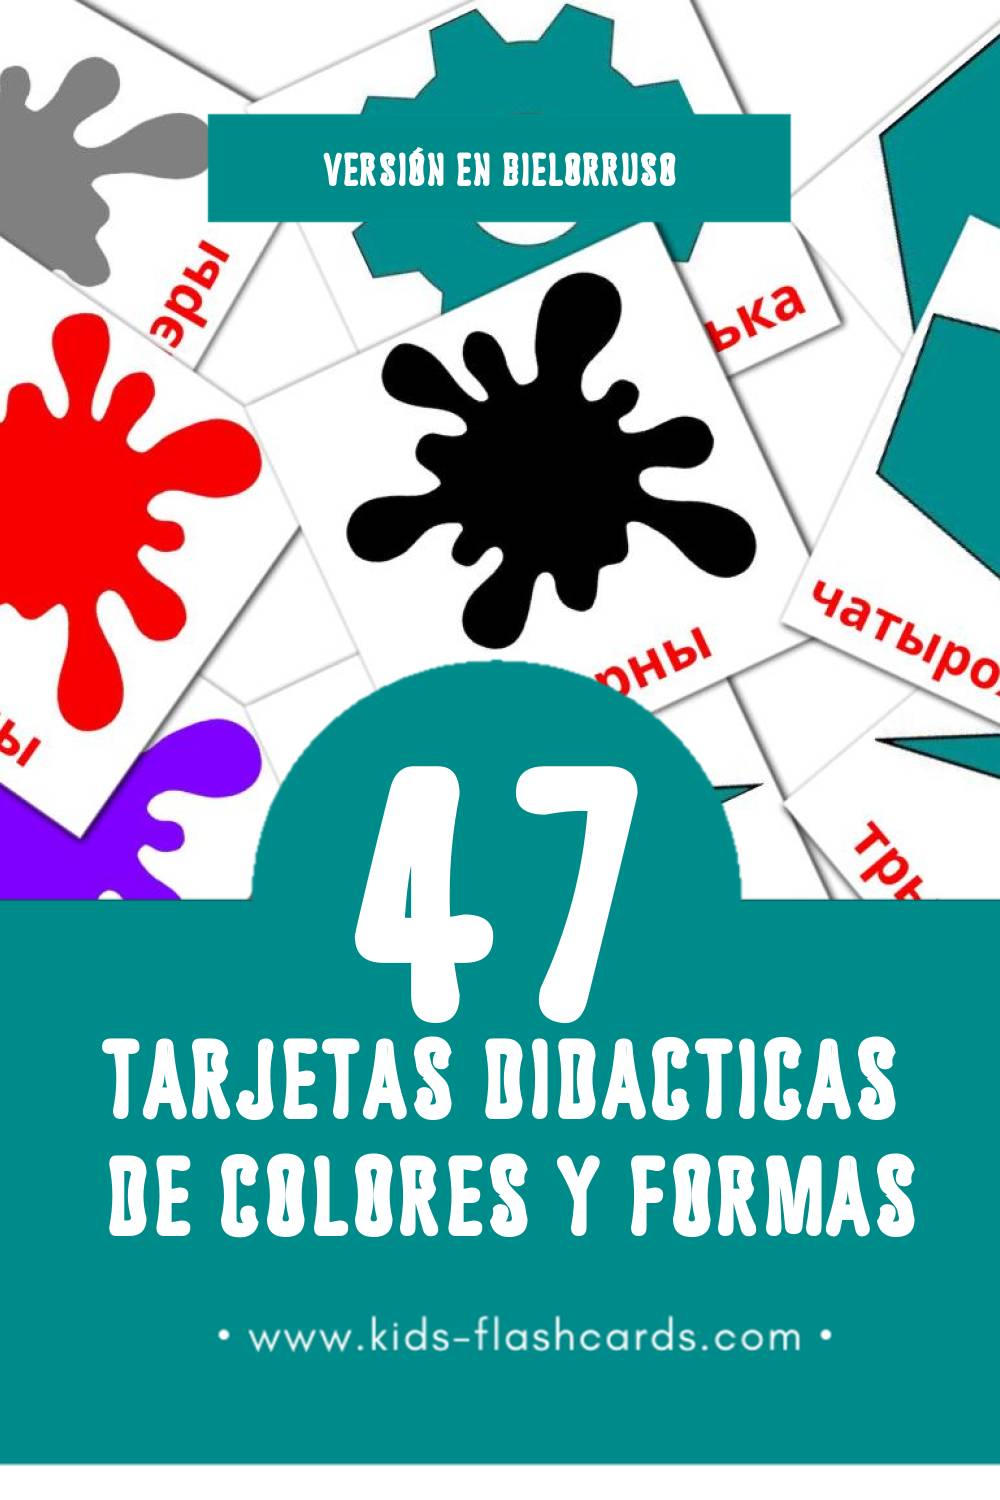 Tarjetas visuales de Колеру і формы para niños pequeños (47 tarjetas en Bielorruso)